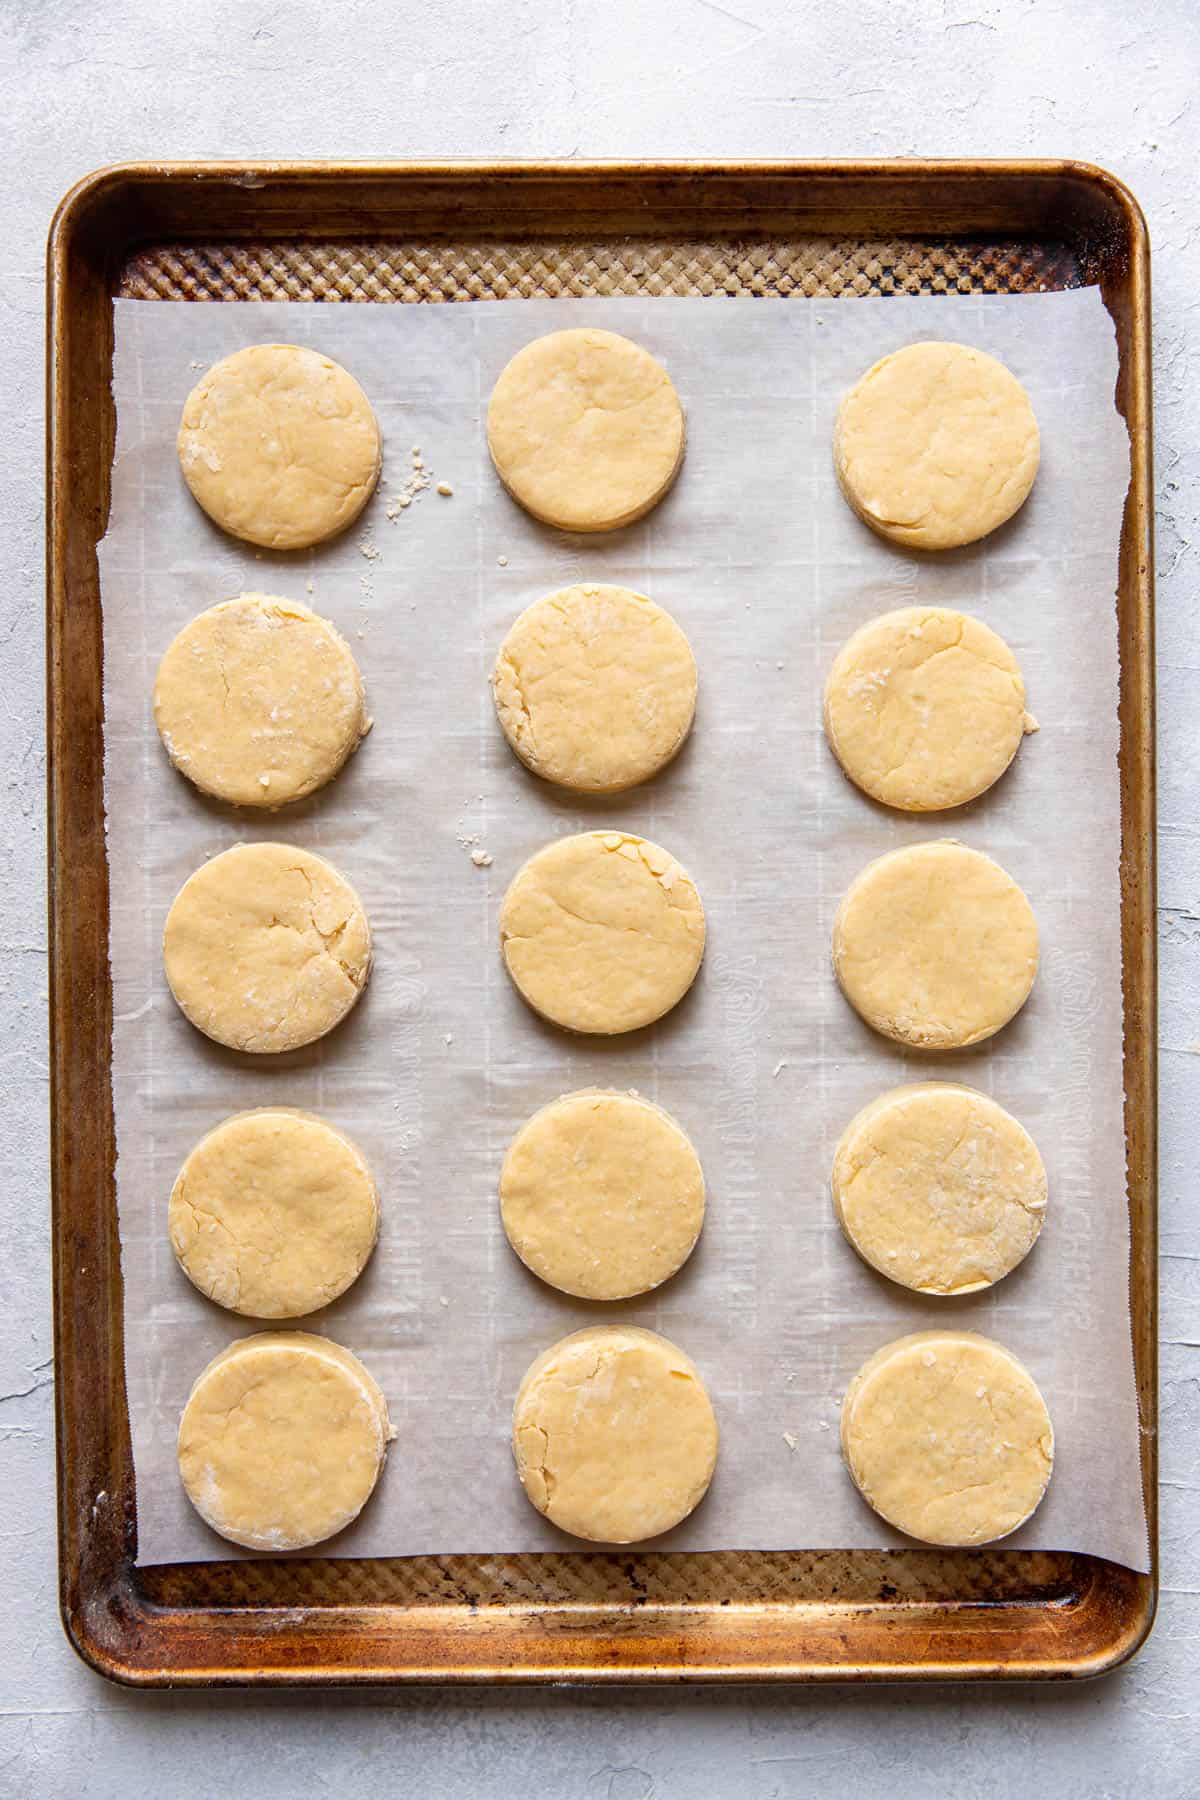 Irish scone prior to baking on cookie sheet.